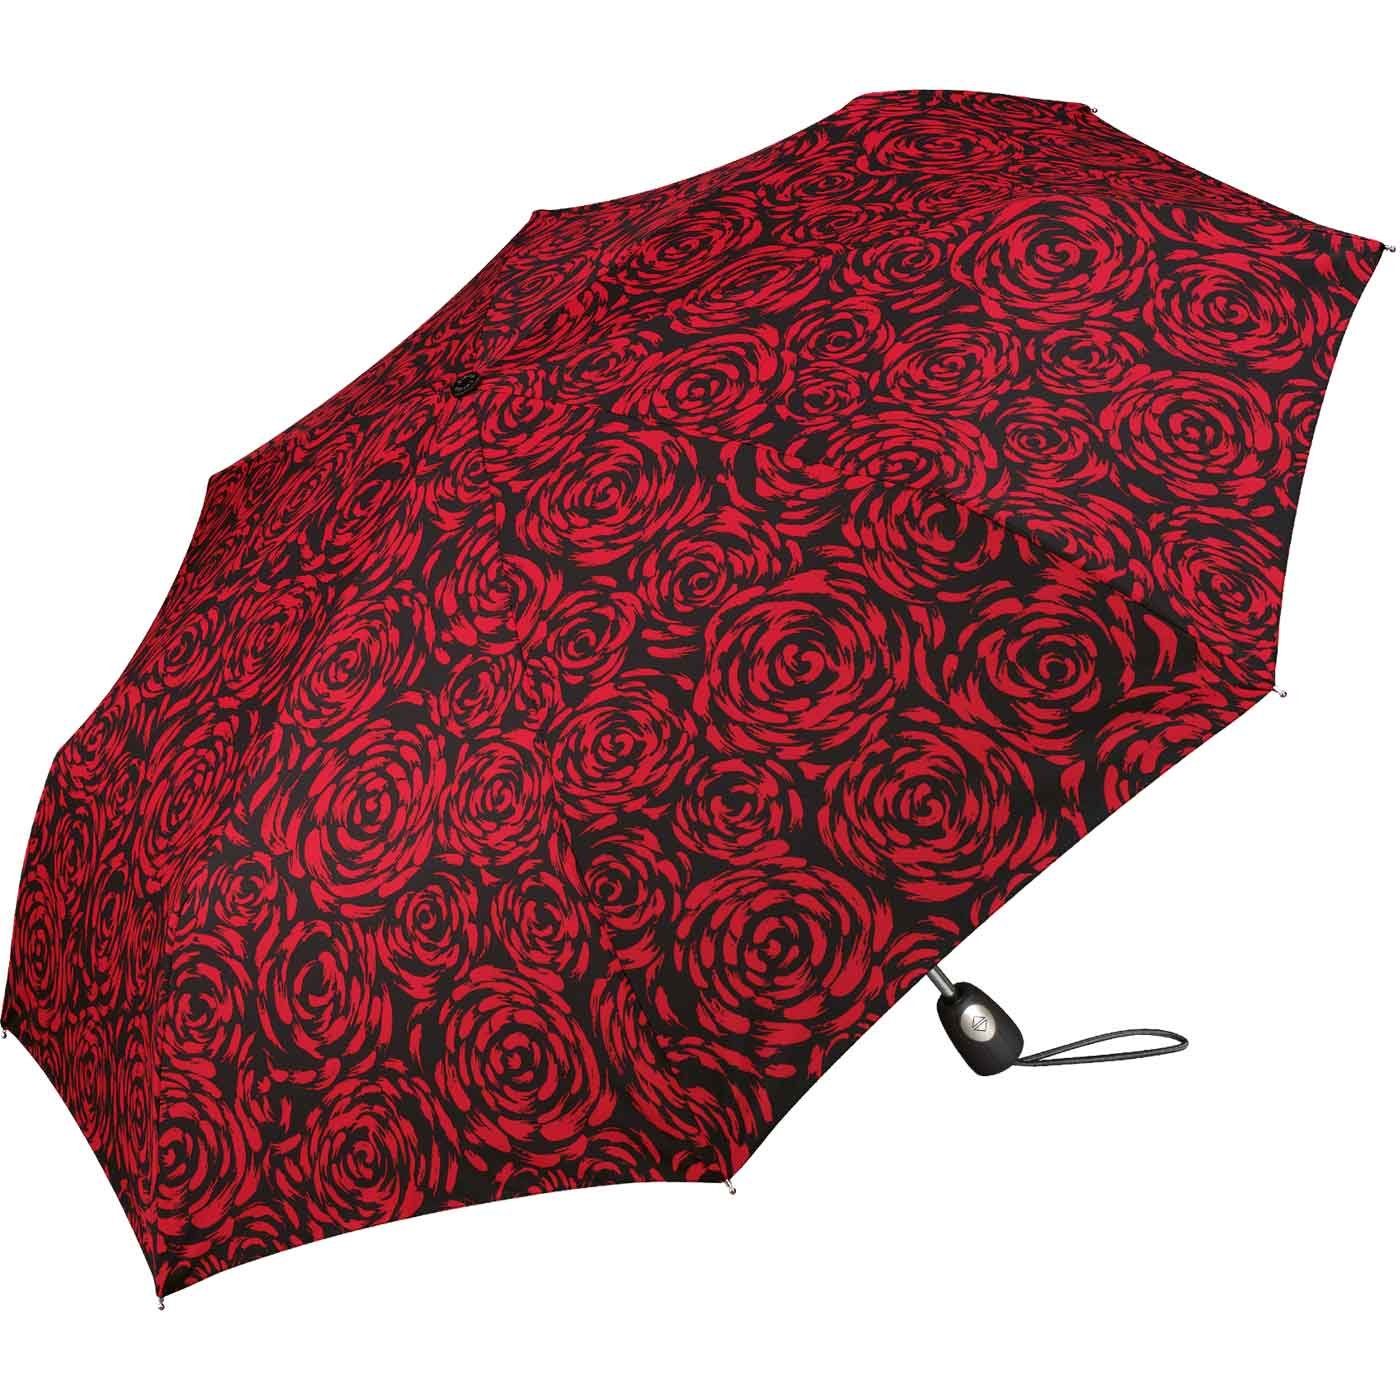 Pierre Cardin Taschenregenschirm schöner Damen-Regenschirm mit Auf-Zu-Automatik, mit wunderschöner Rosenblütenmalerei rot